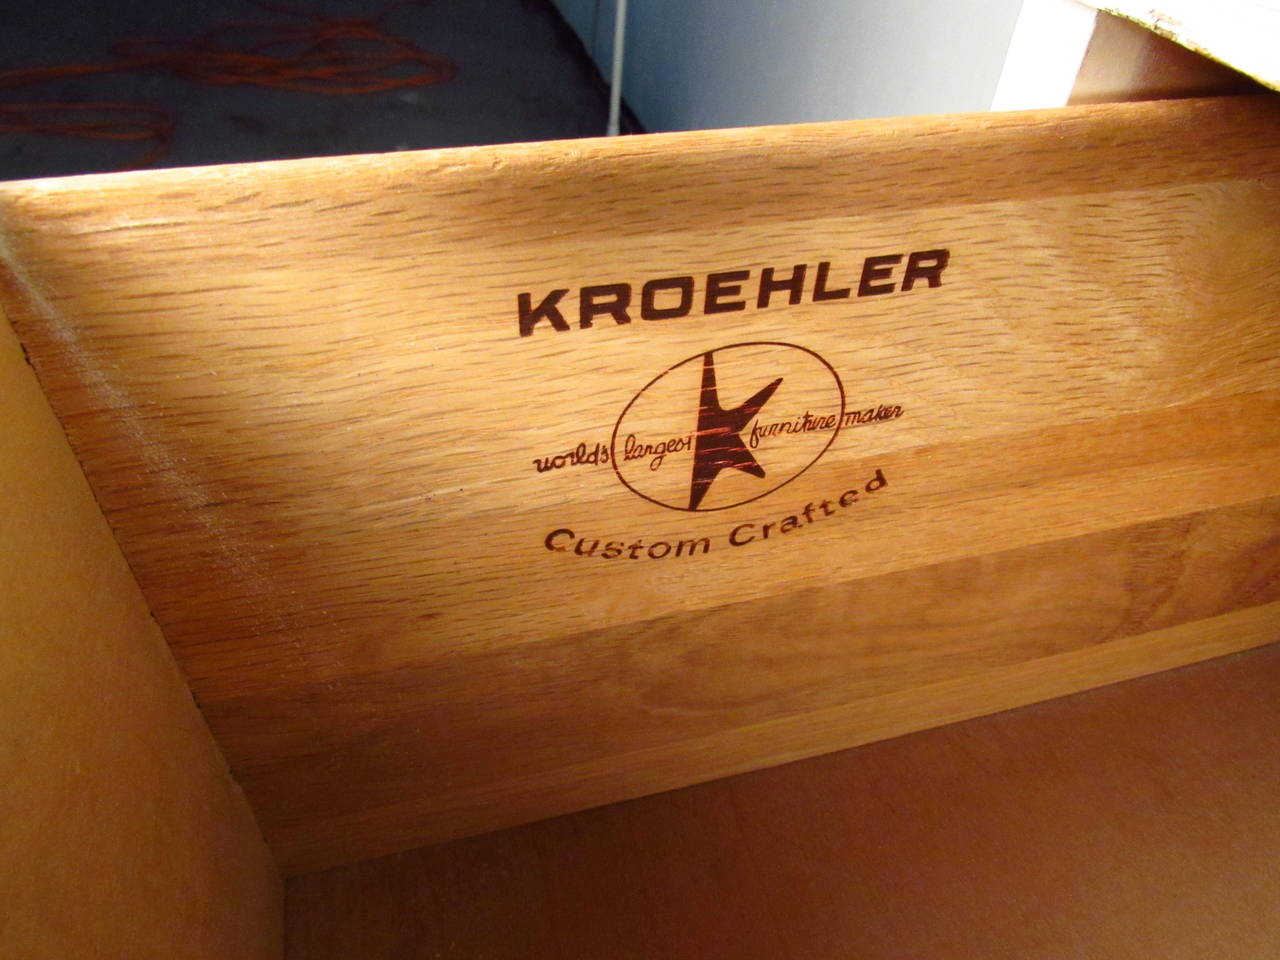 dating kroehler furniture